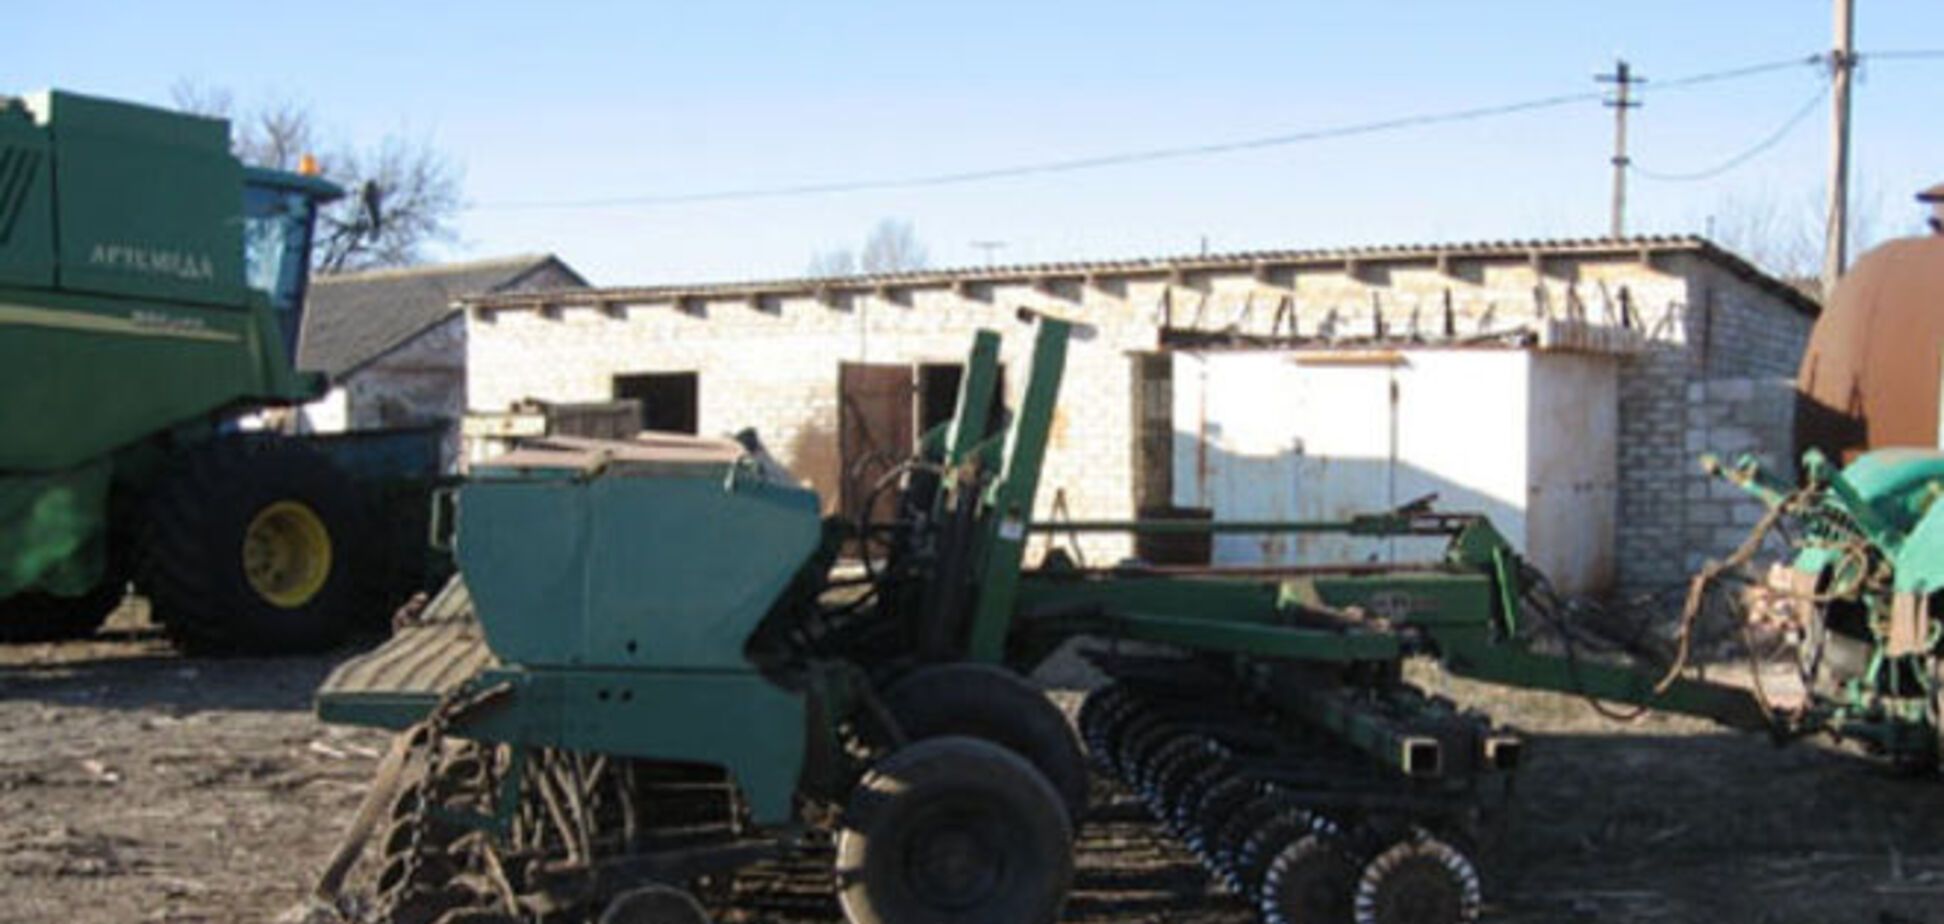 Хліб на мінному полі: на Донеччині під час посівної підірвався трактор - опубліковані фото